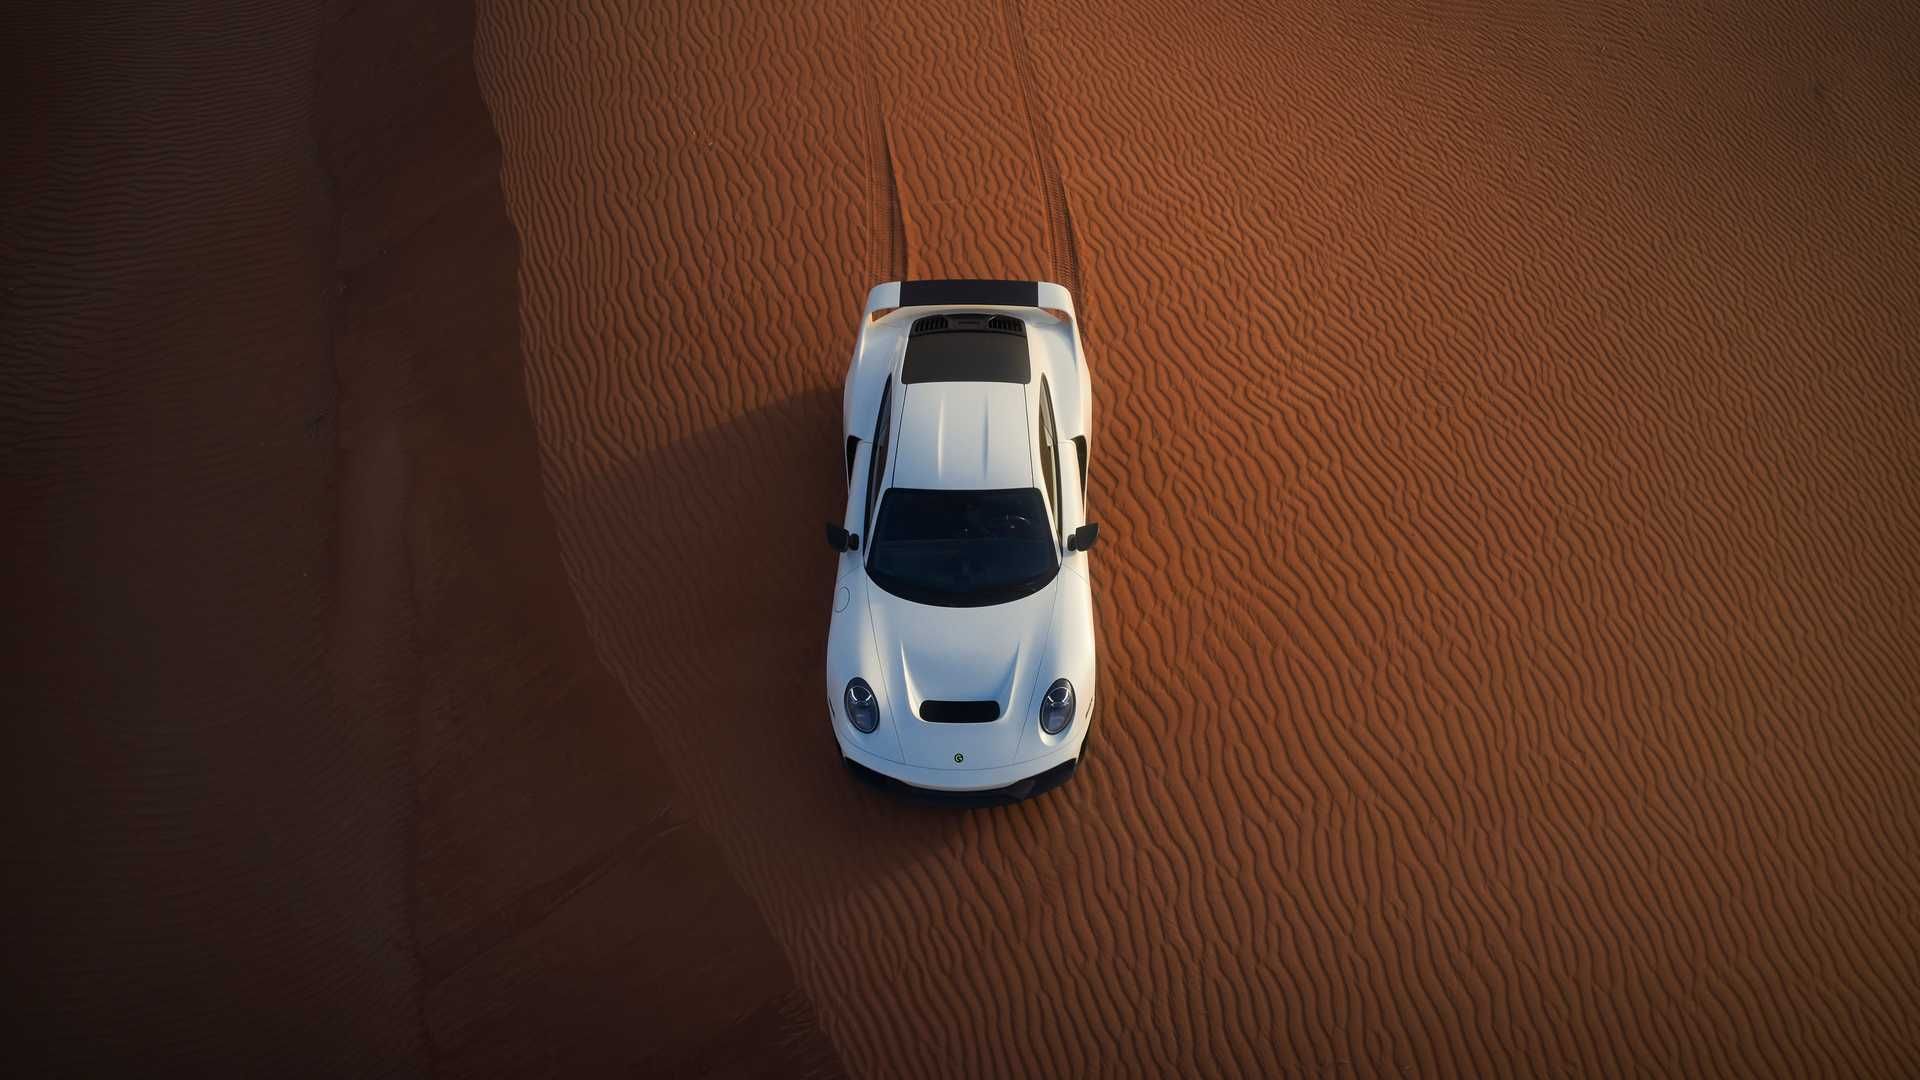 نمای بالا پورشه مارک فیلیپ گمبالا مرسین / Marc Philipp Gemballa Marsien Porsche در صحرا